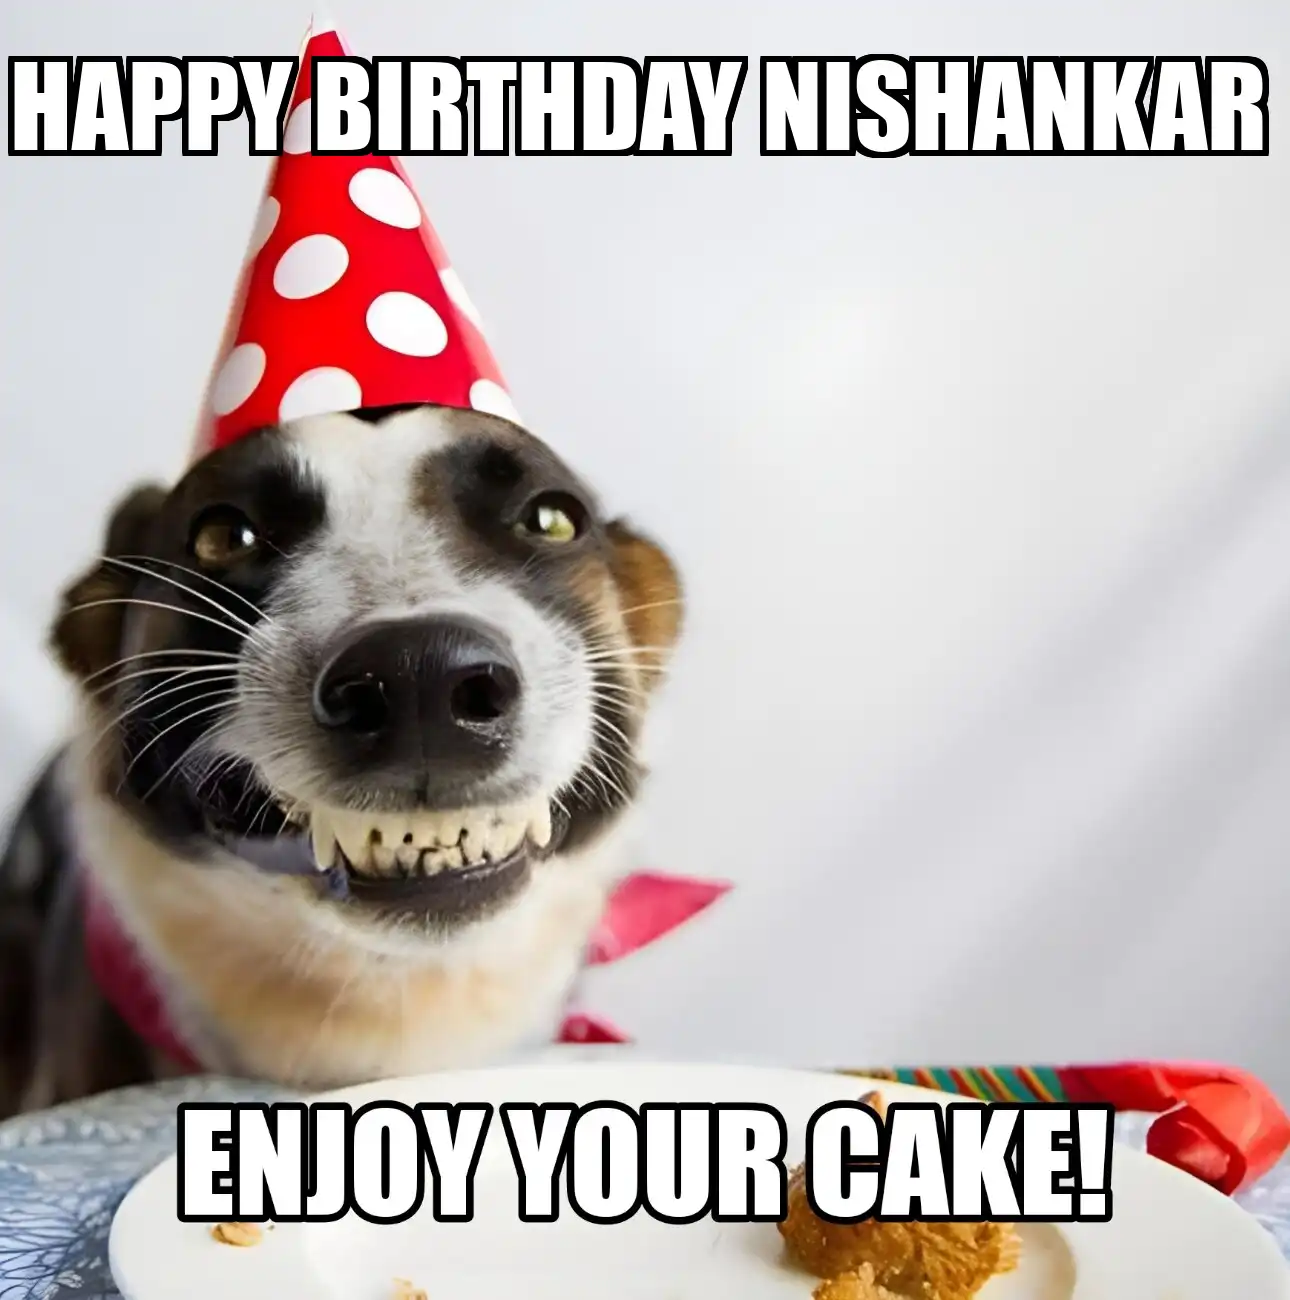 Happy Birthday Nishankar Enjoy Your Cake Dog Meme